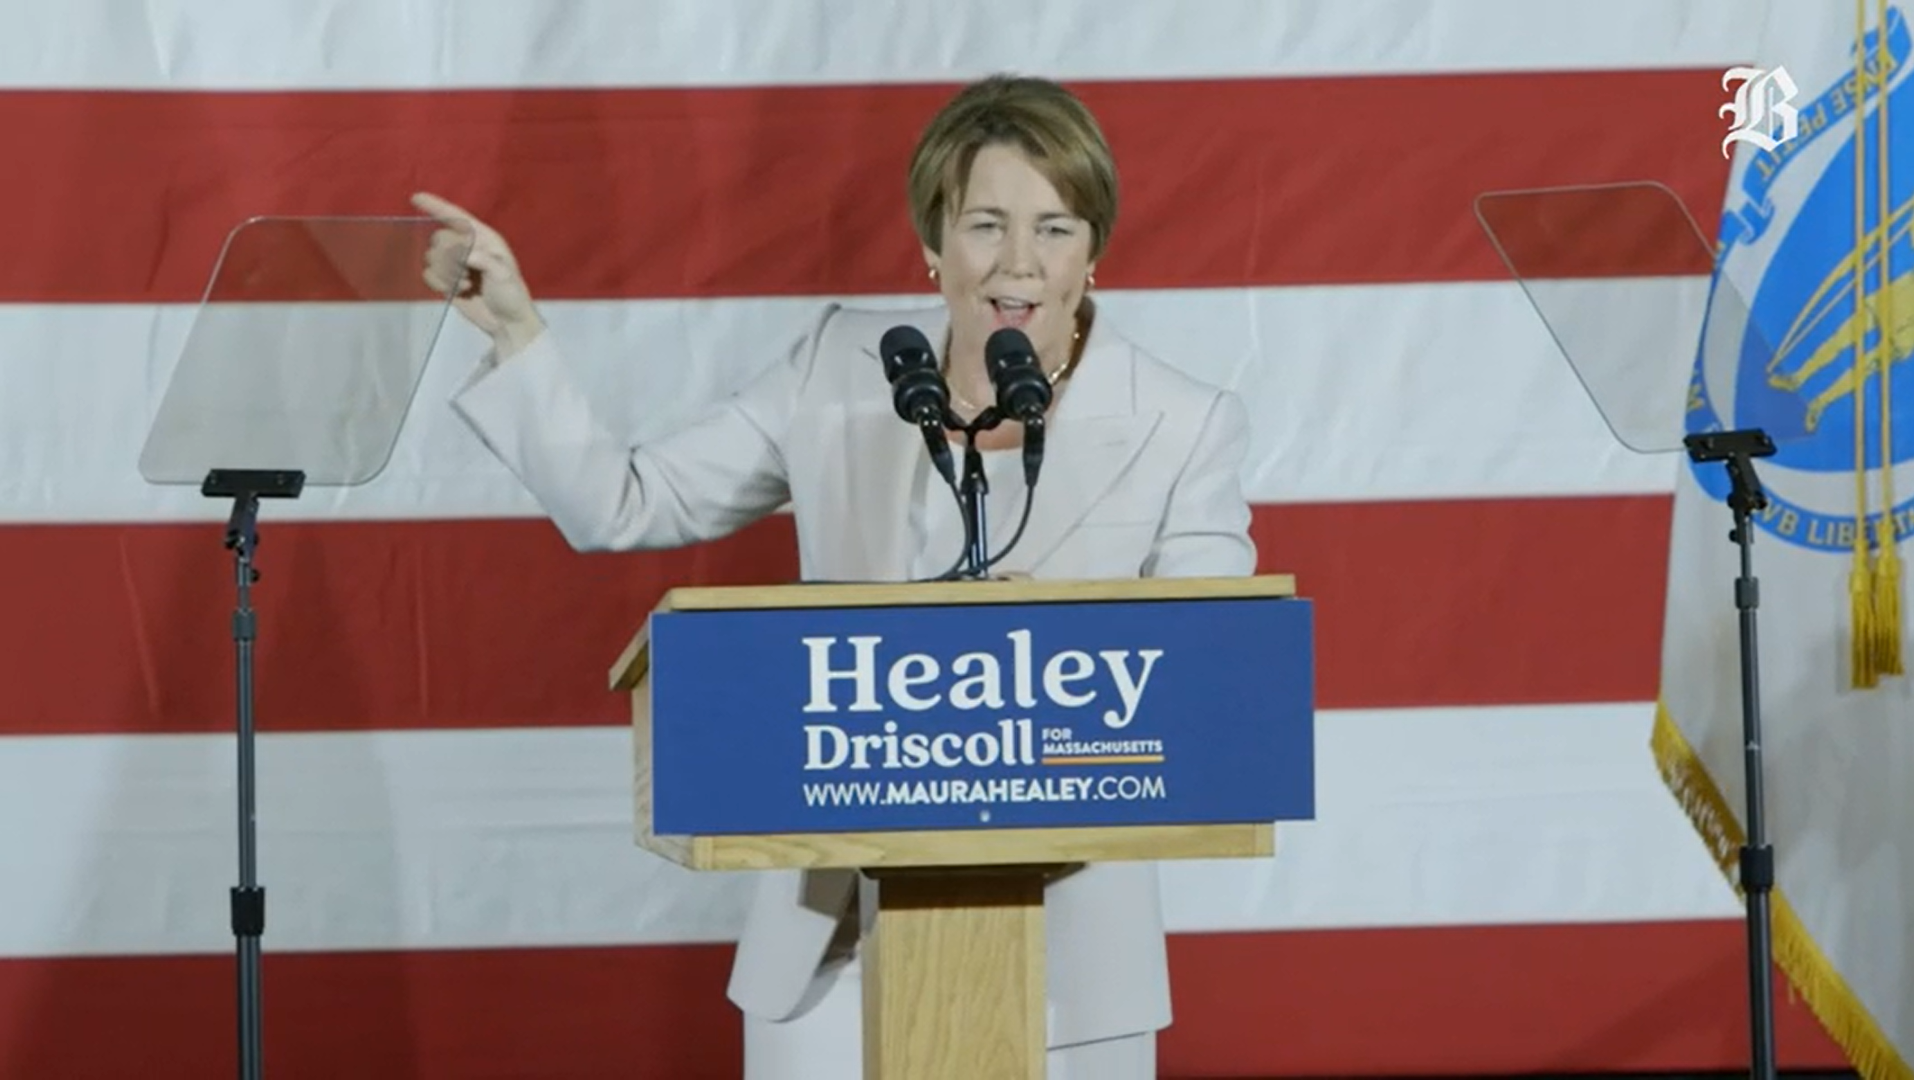 莫拉·希利赢得马萨诸塞州州长竞选 打破白人男性政治主导的悠久传统